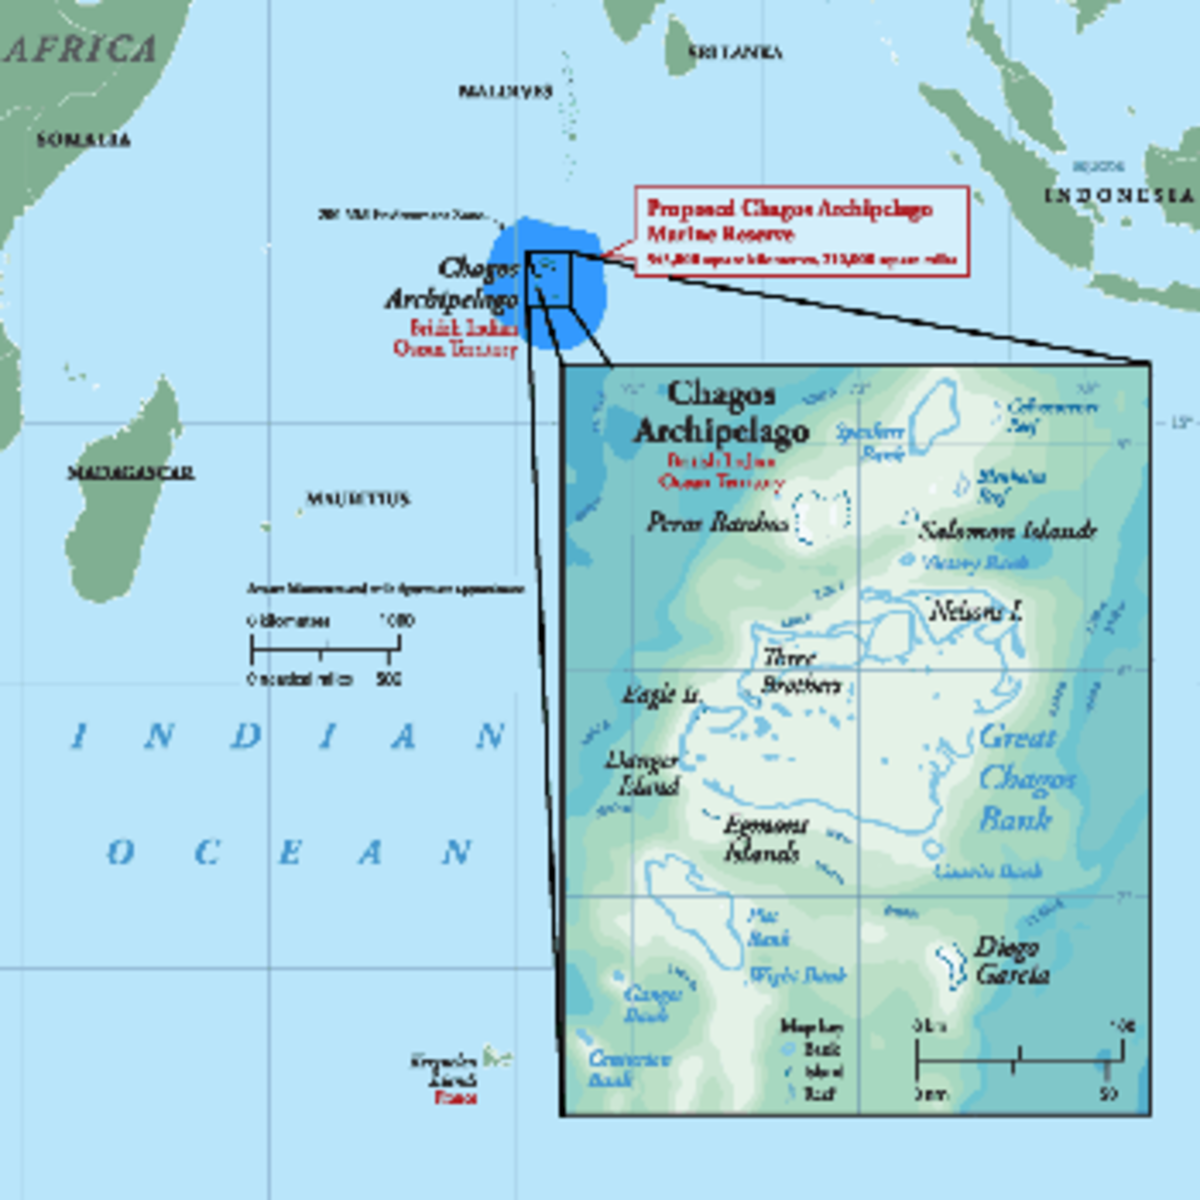 chagos archipelago